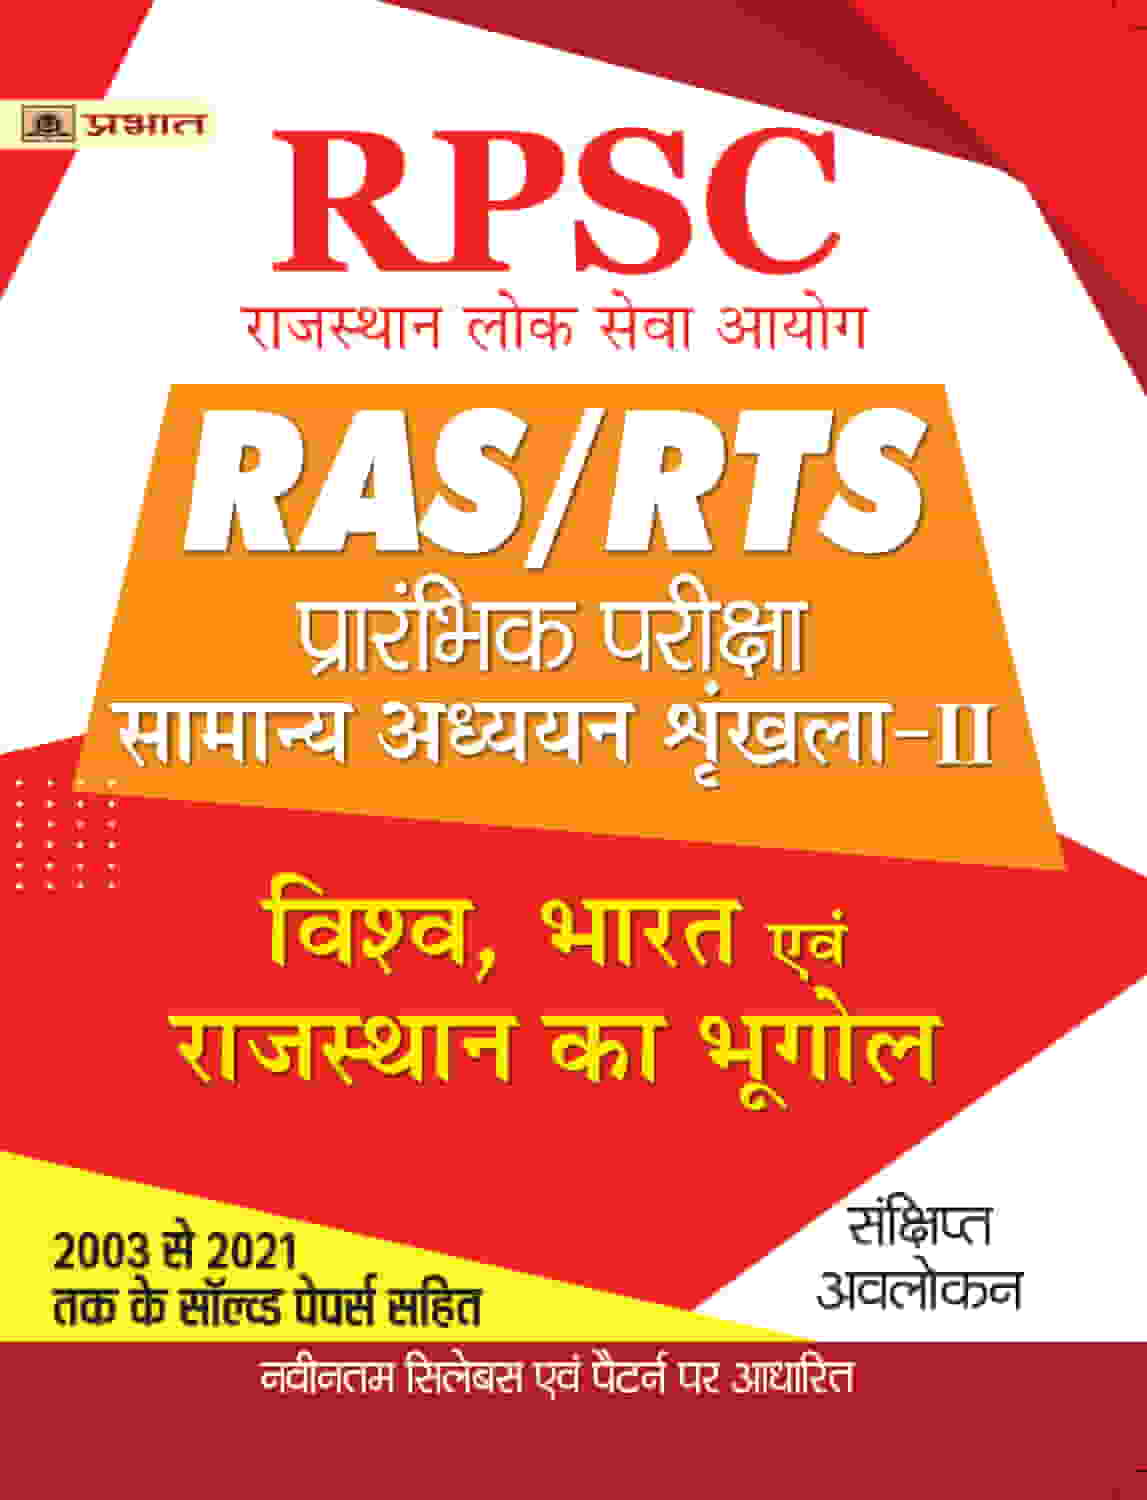 RPSC RAS/RTS Prarambhik Pariksha Vishav, Bharat Evam Rajasthan Ka Bhugol